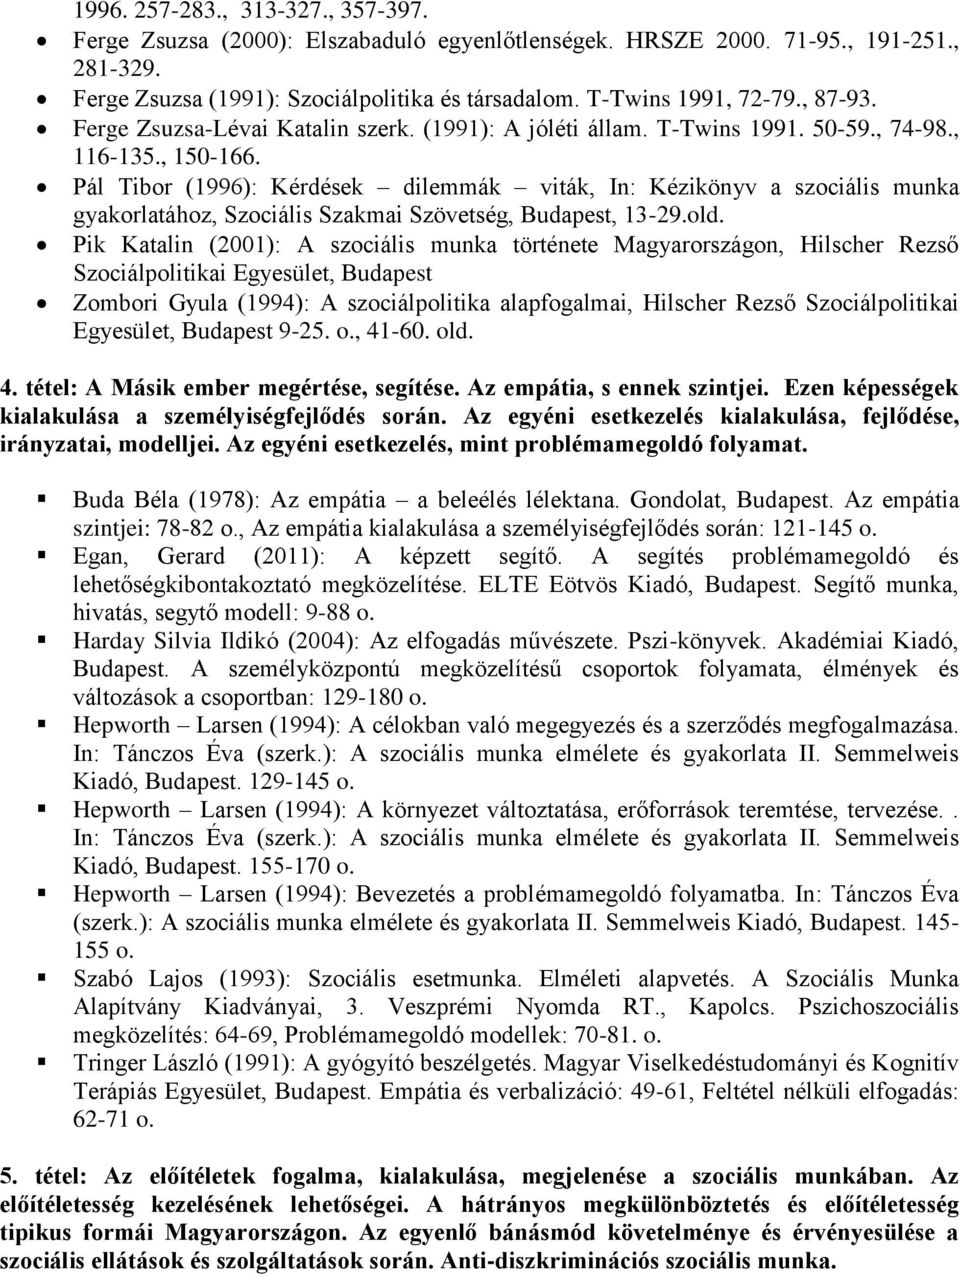 Pál Tibor (1996): Kérdések dilemmák viták, In: Kézikönyv a szociális munka gyakorlatához, Szociális Szakmai Szövetség, Budapest, 13-29.old.